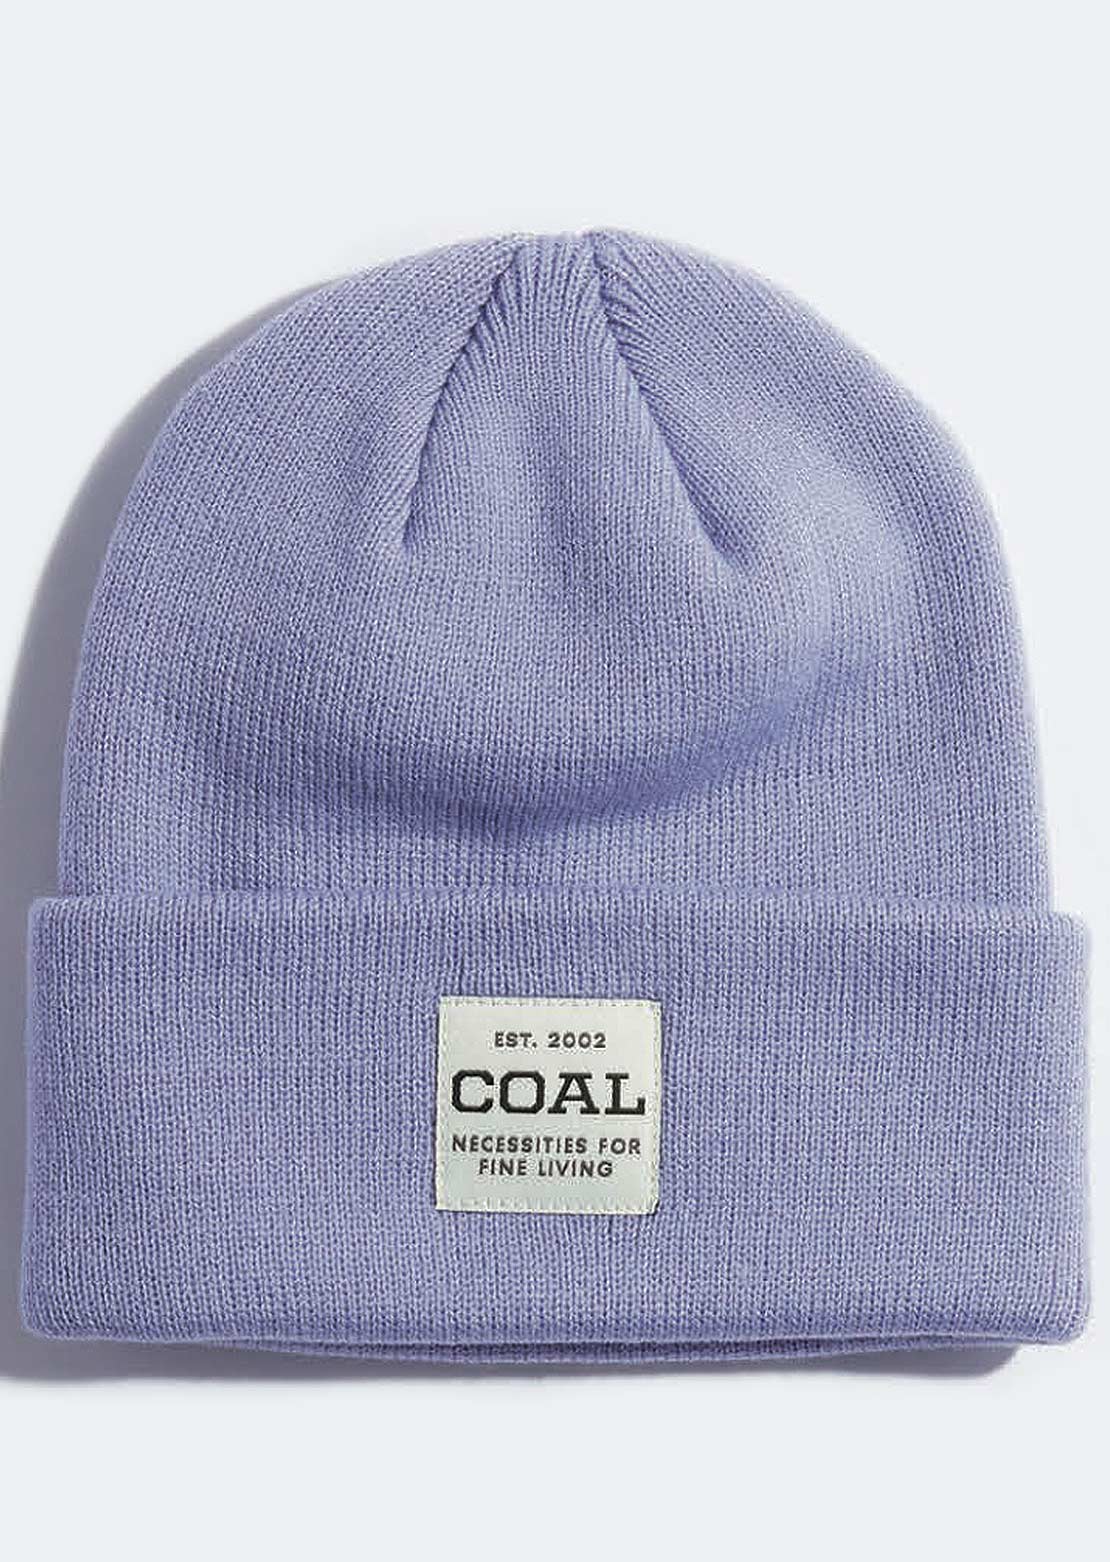 Coal Le bonnet uniforme mi-haut